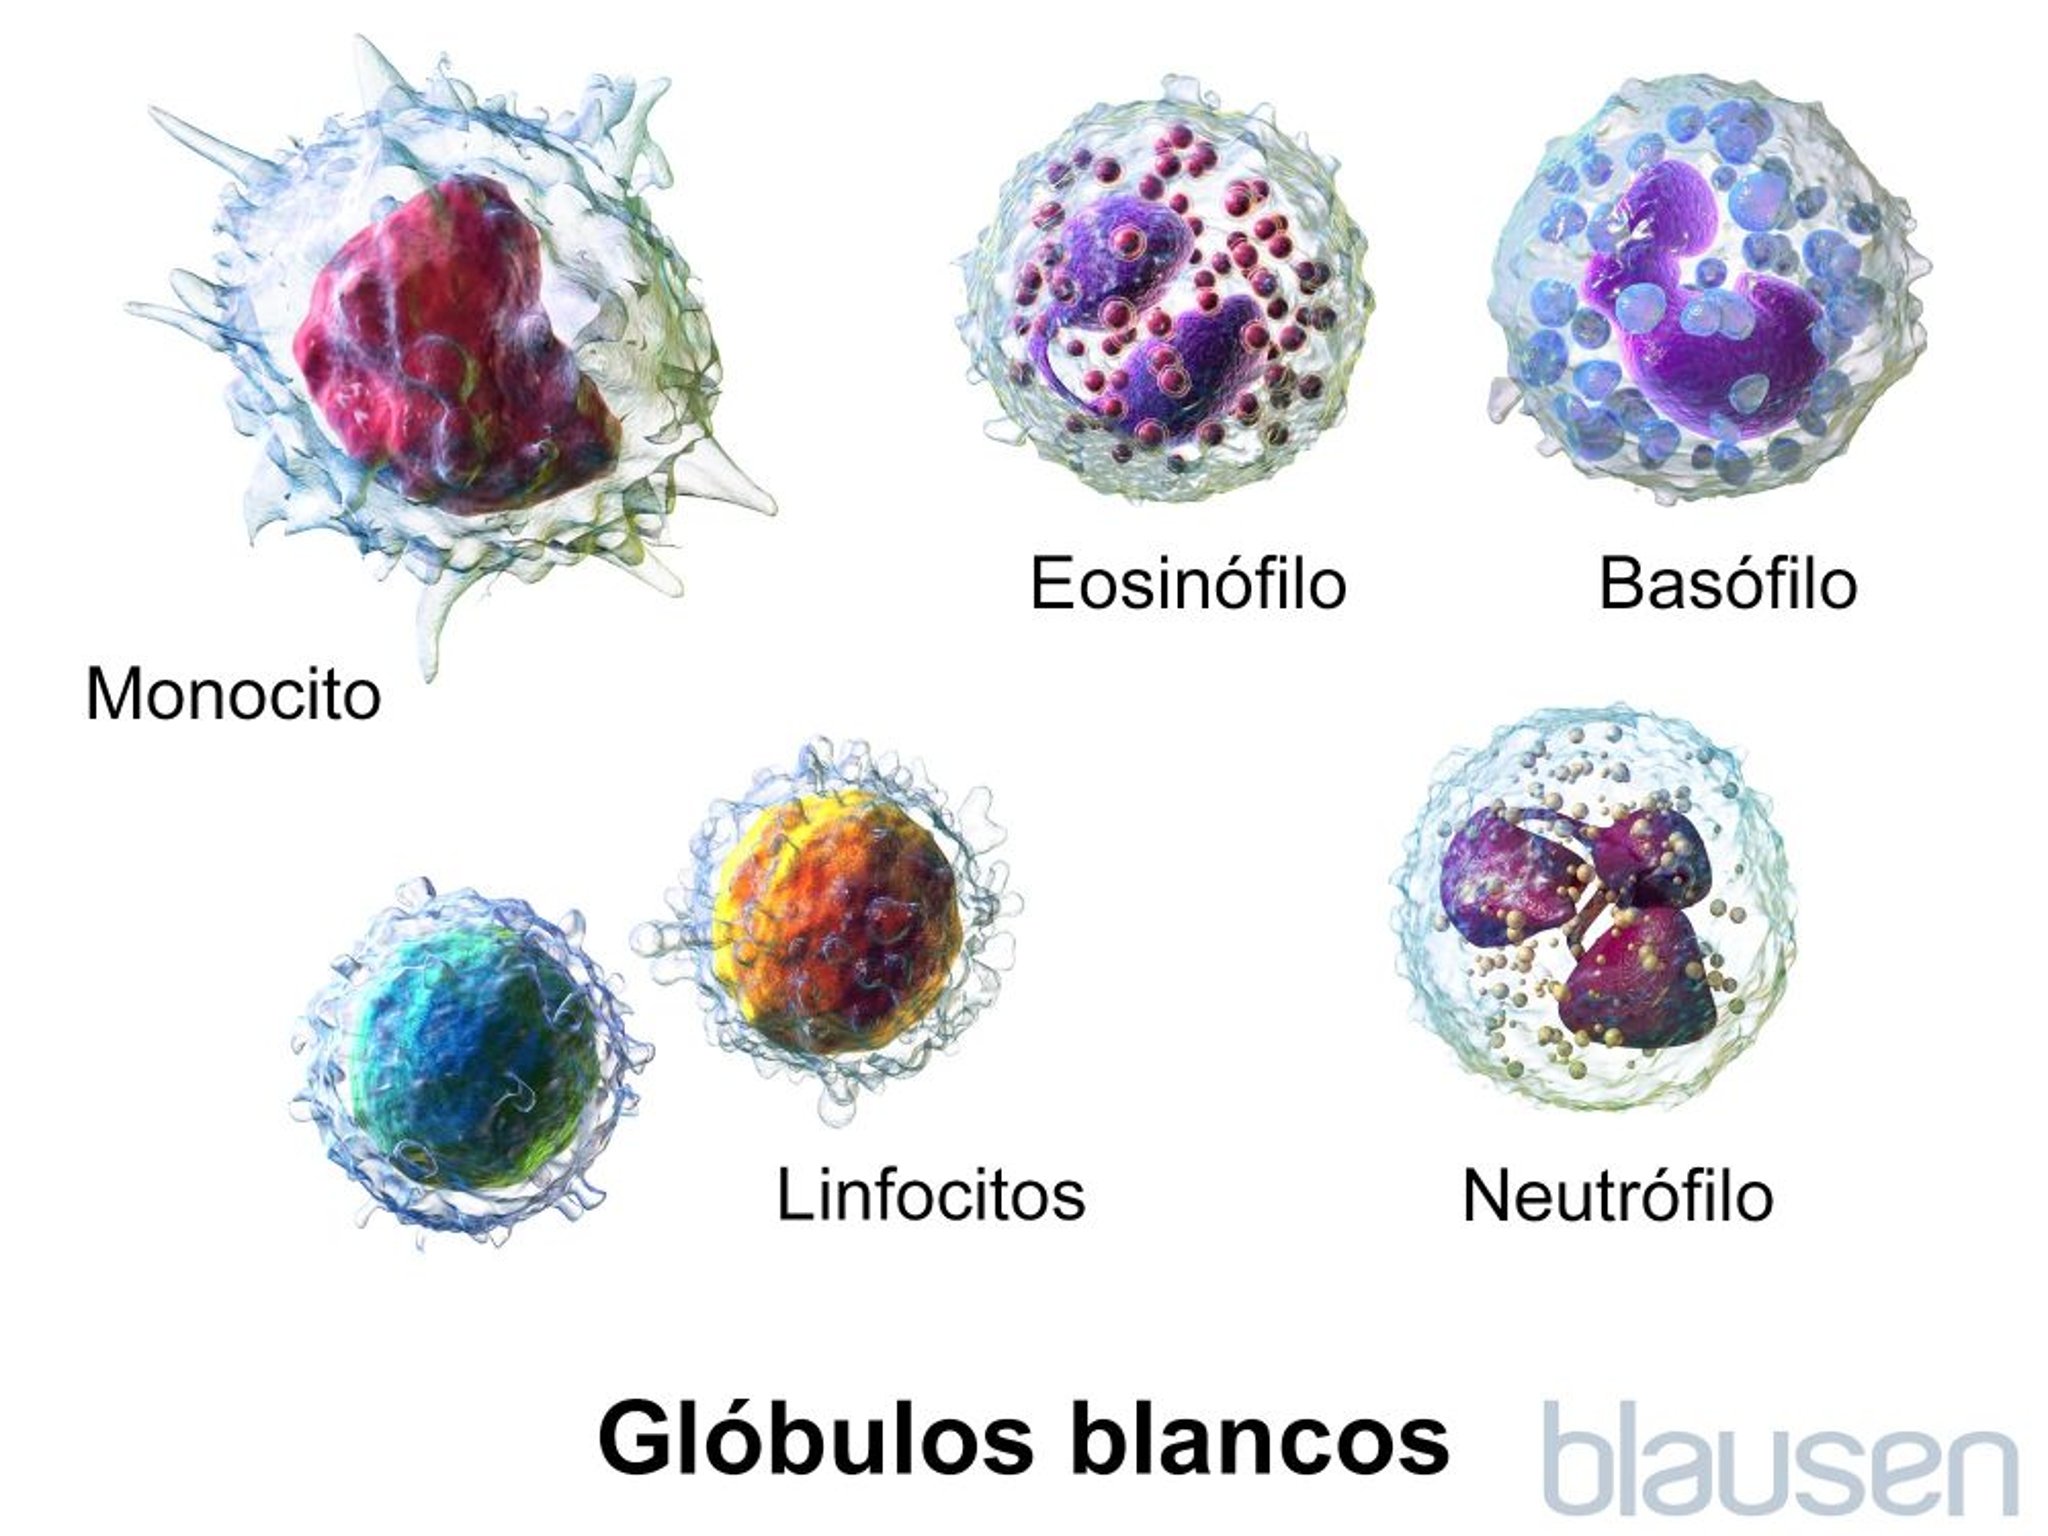 Glóbulos blancos (leucocitos)